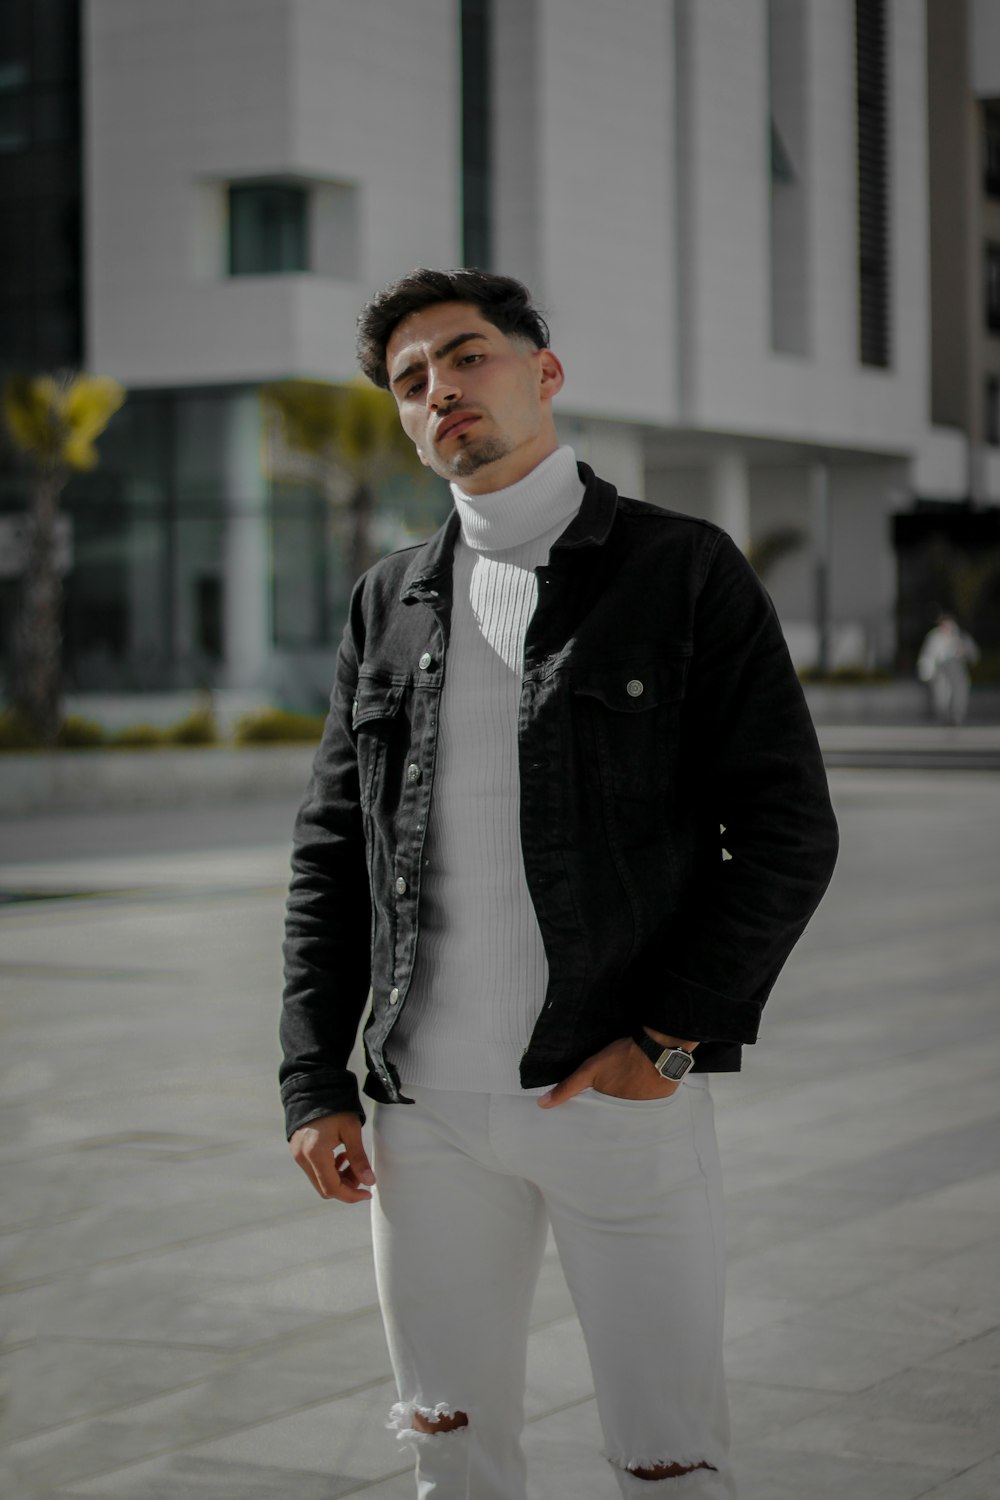 Maravilloso Dejar abajo Simplemente desbordando Foto Hombre con chaqueta negra y pantalón blanco parado en la acera durante  el día – Imagen Marruecos gratis en Unsplash